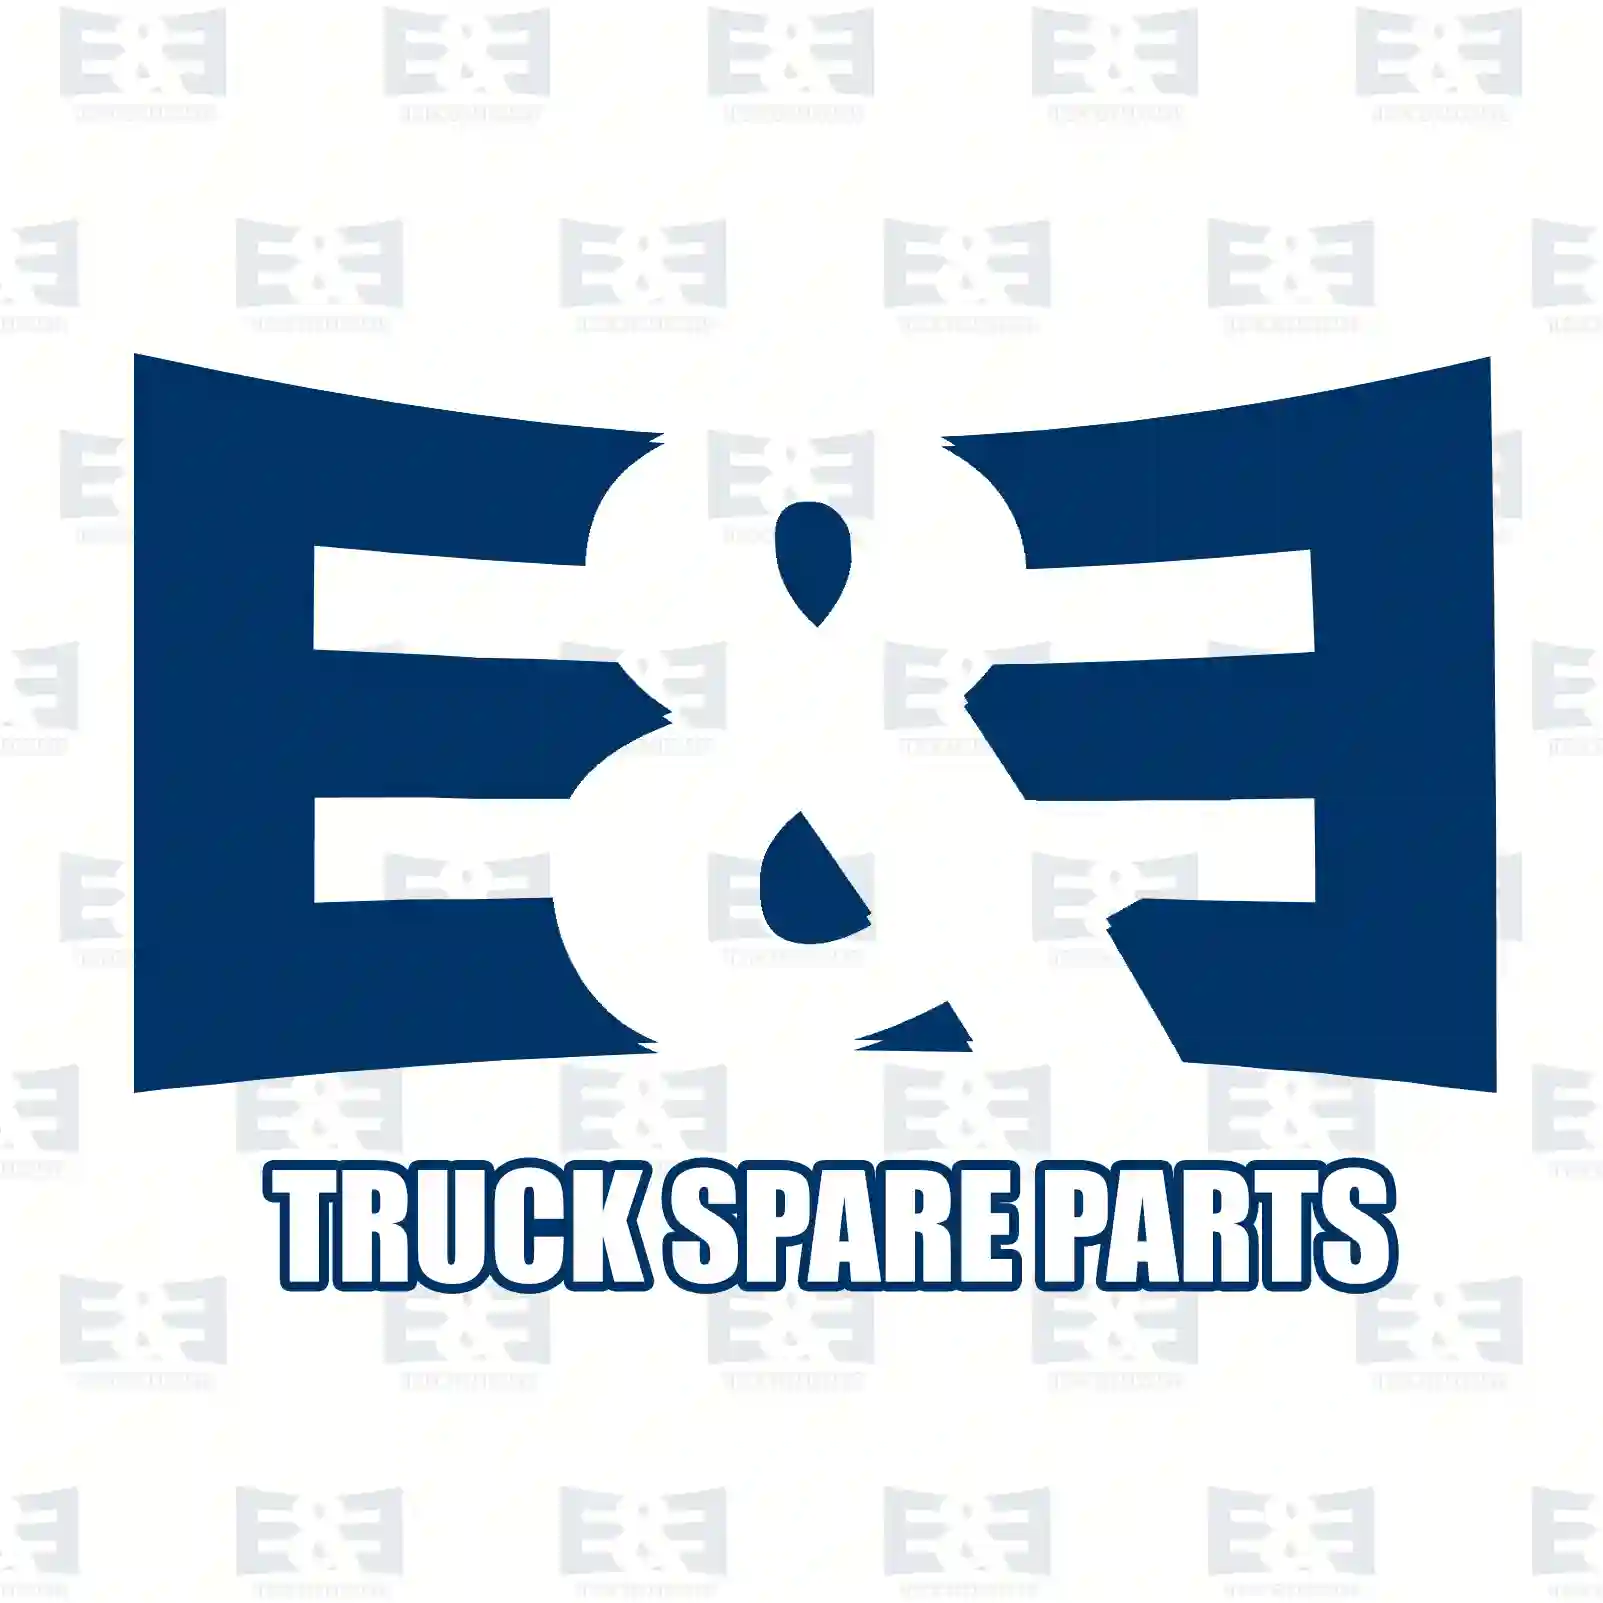 Load Sensitive Valve Load sensitive valve, EE No 2E2294782 ,  oem no:0170985, 1236824, 1236824A, 1236824R, 170985 E&E Truck Spare Parts | Truck Spare Parts, Auotomotive Spare Parts